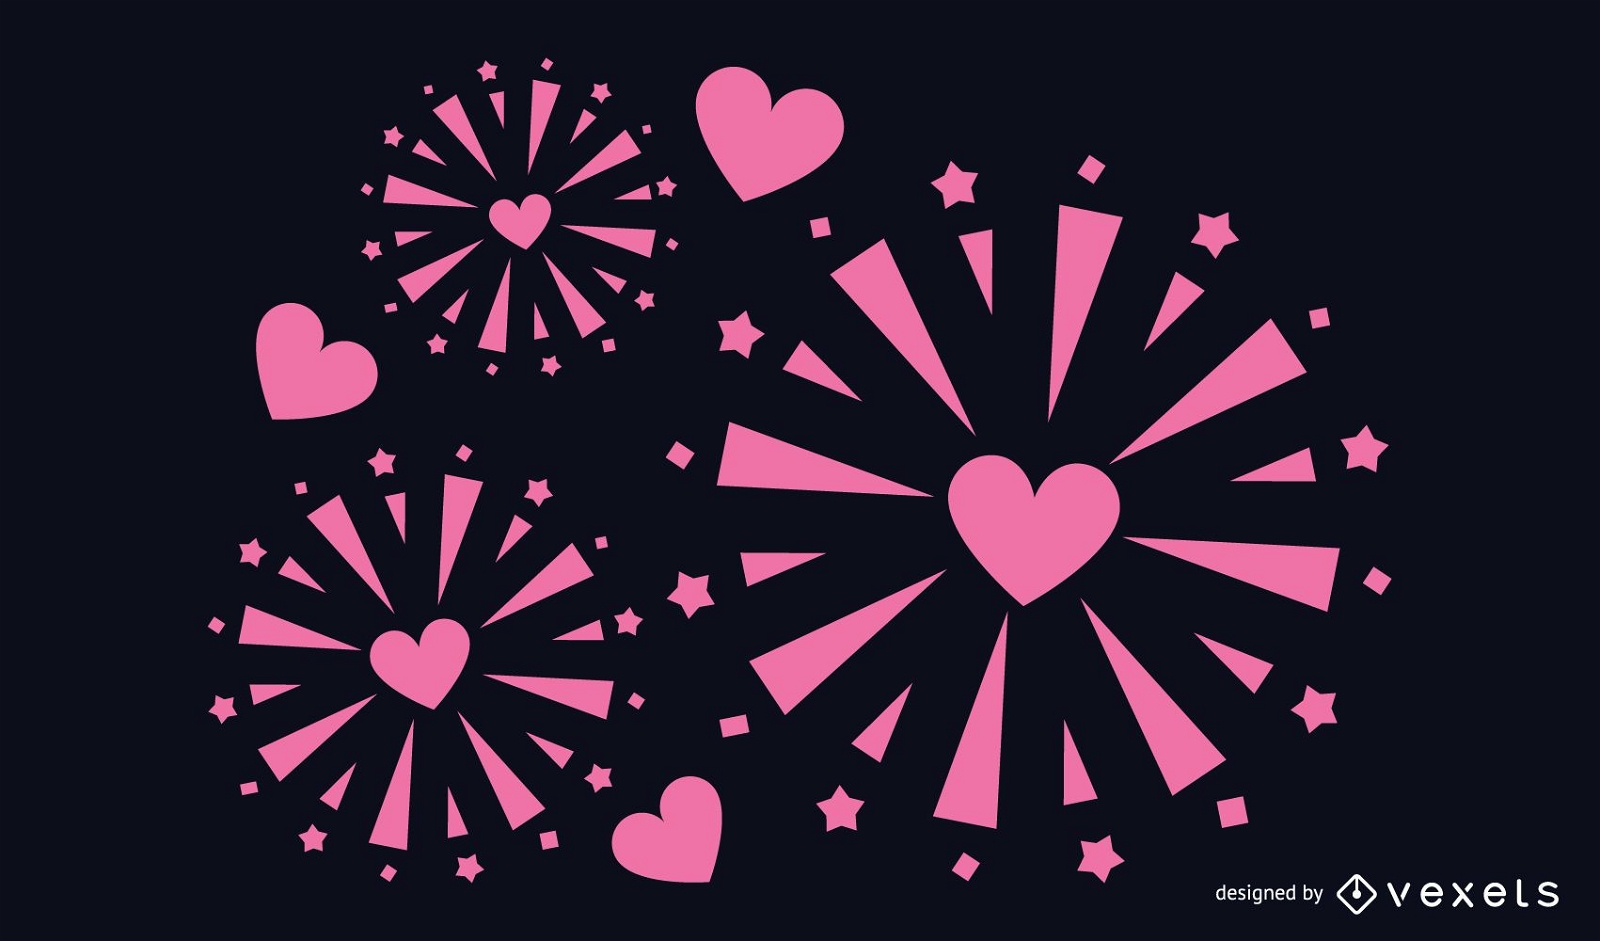 Heart shaped firework design